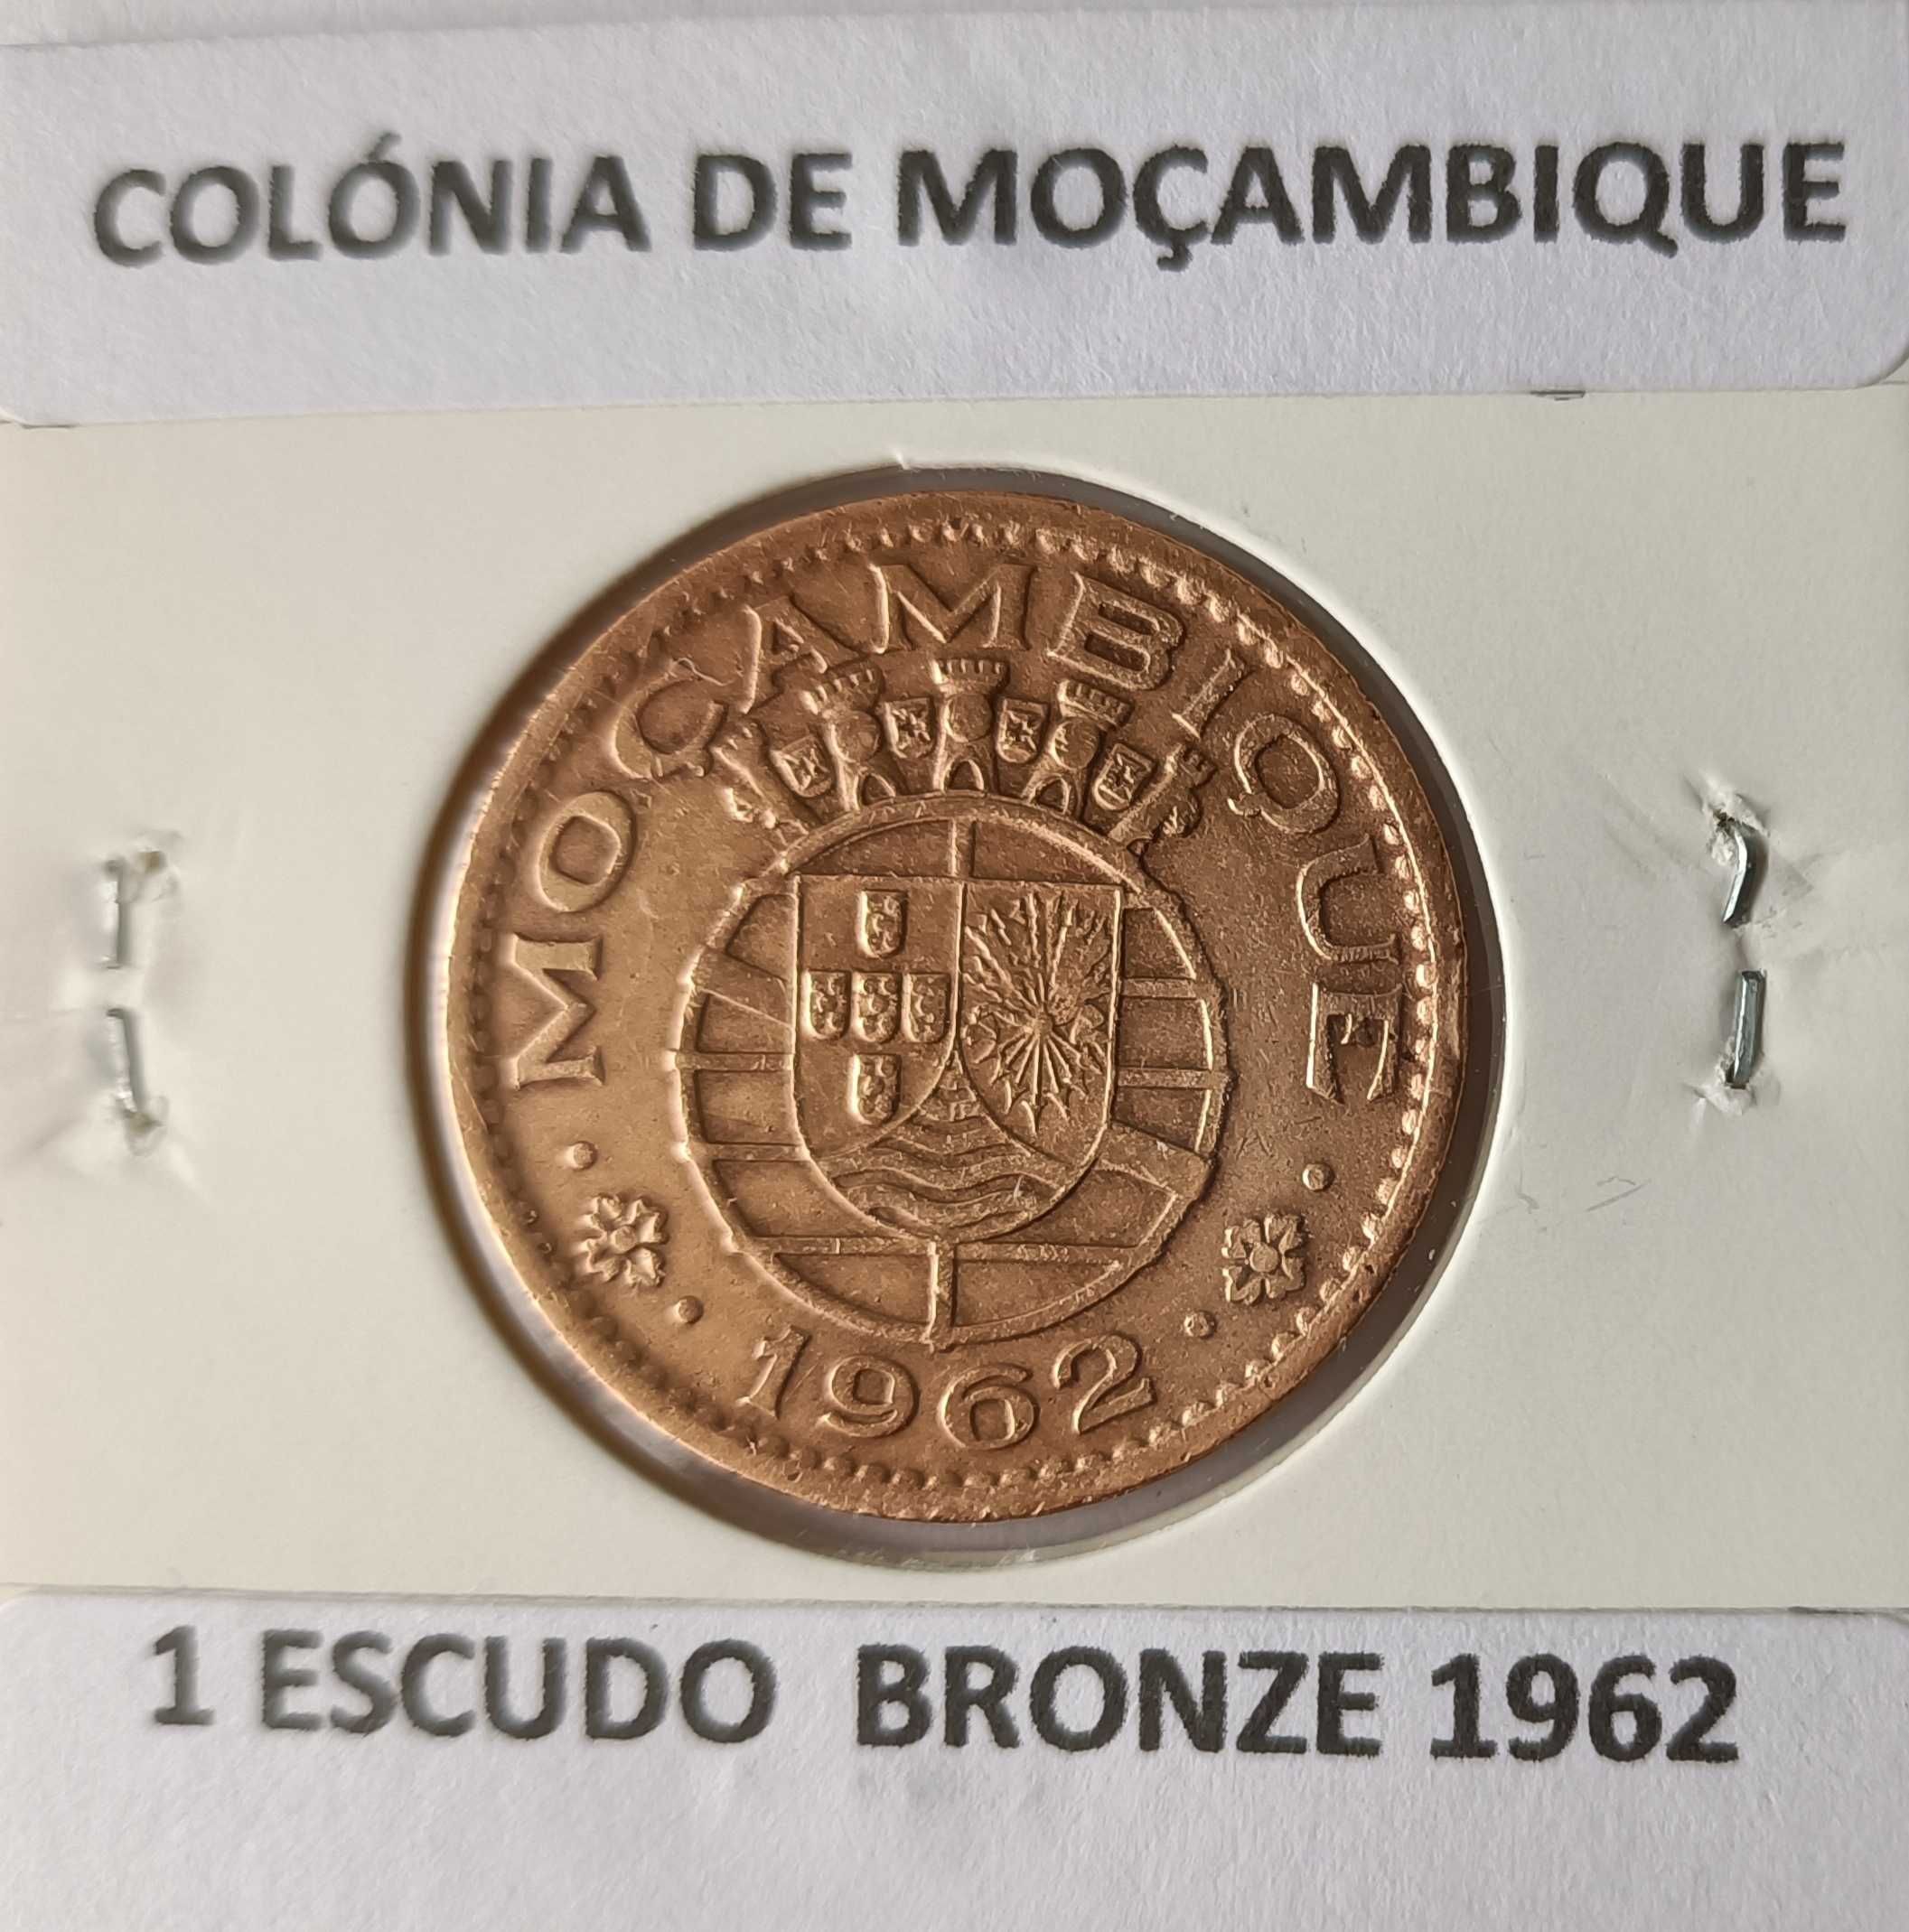 Moedas Portuguesas de 1 Escudo Circuladas na Ex Colónia de Moçambique